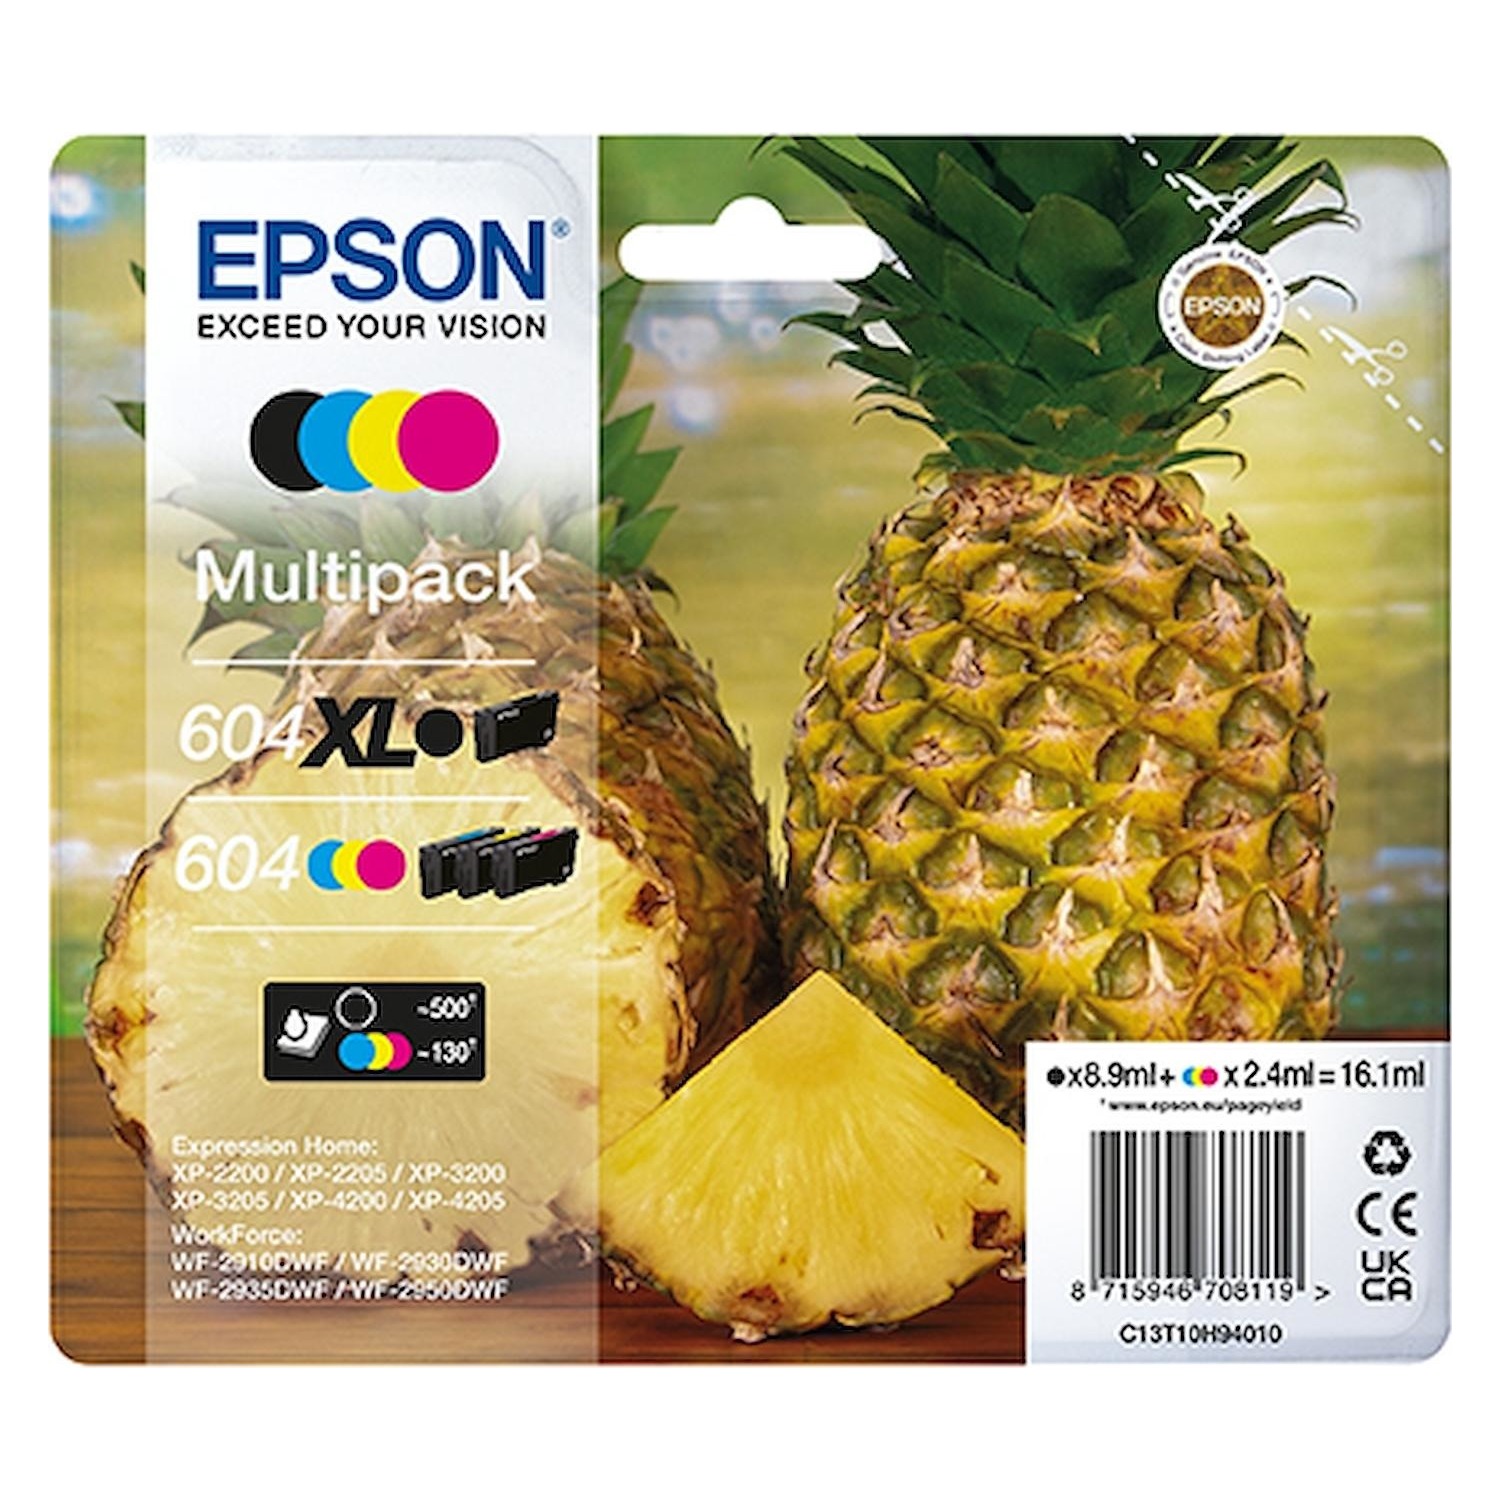 Immagine per Cartuccia multipack Epson ananas 604 XL da DIMOStore